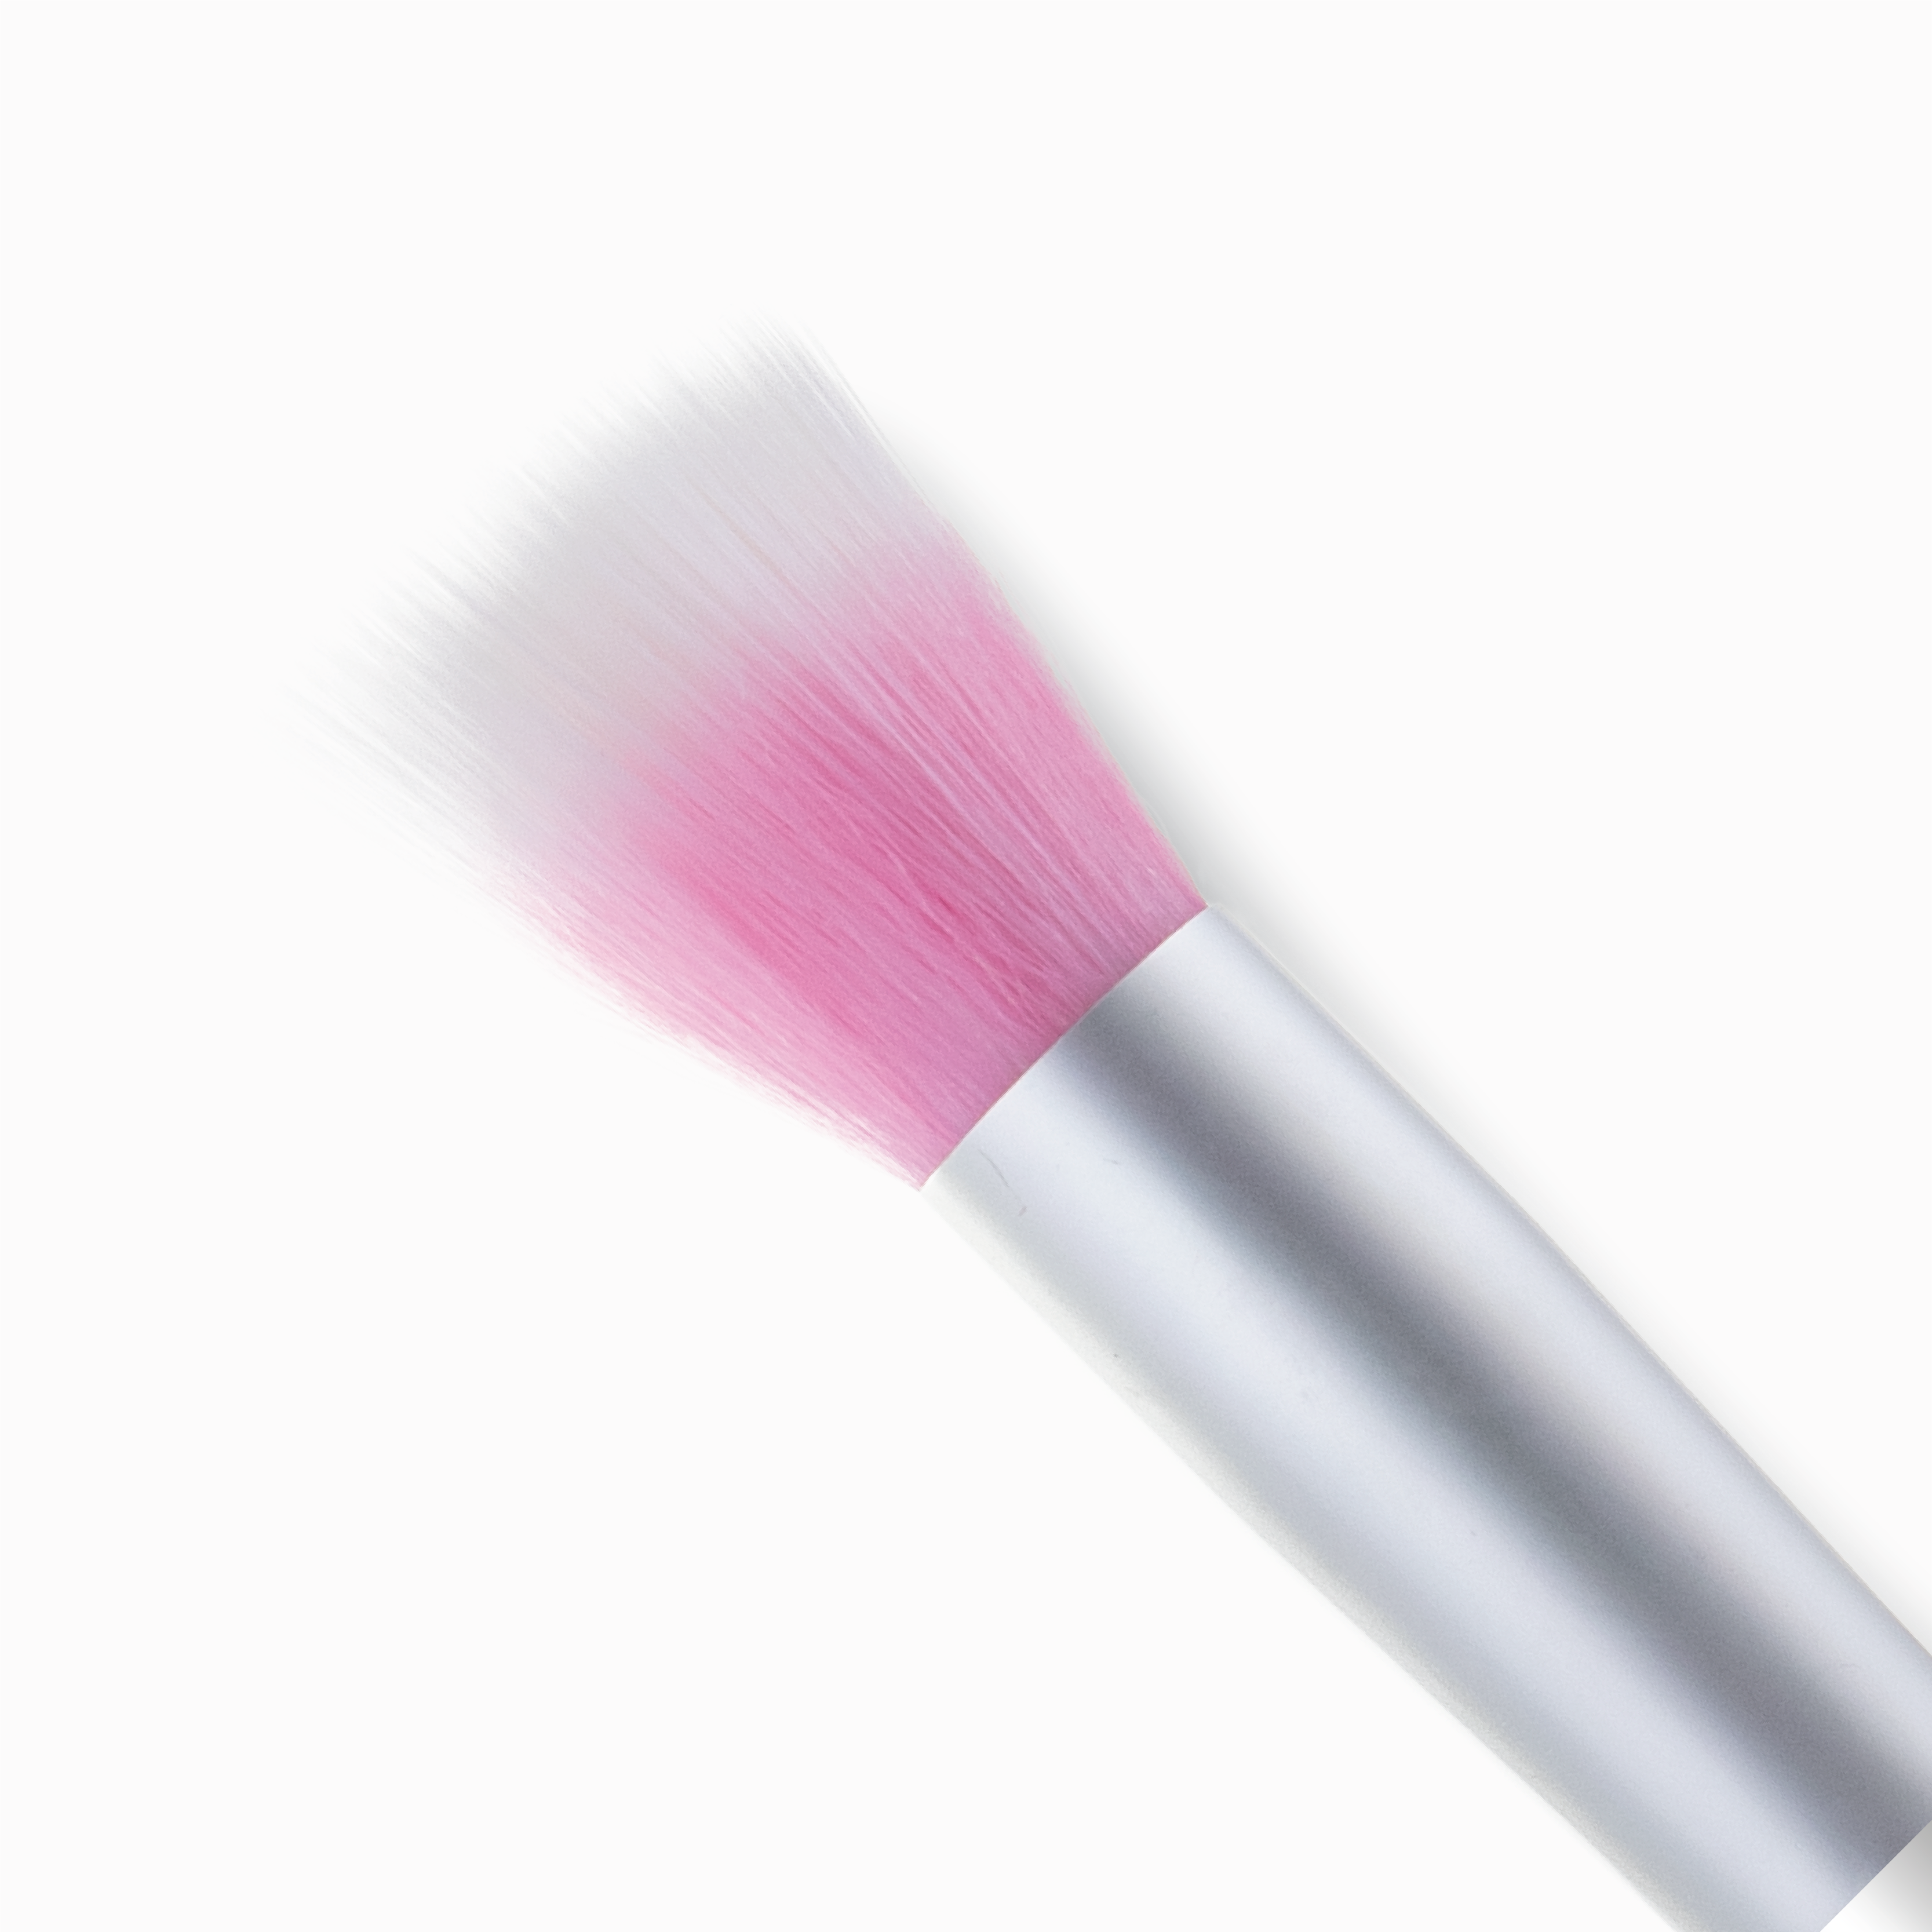 Stippling Makeup Brush in White | Colourpop